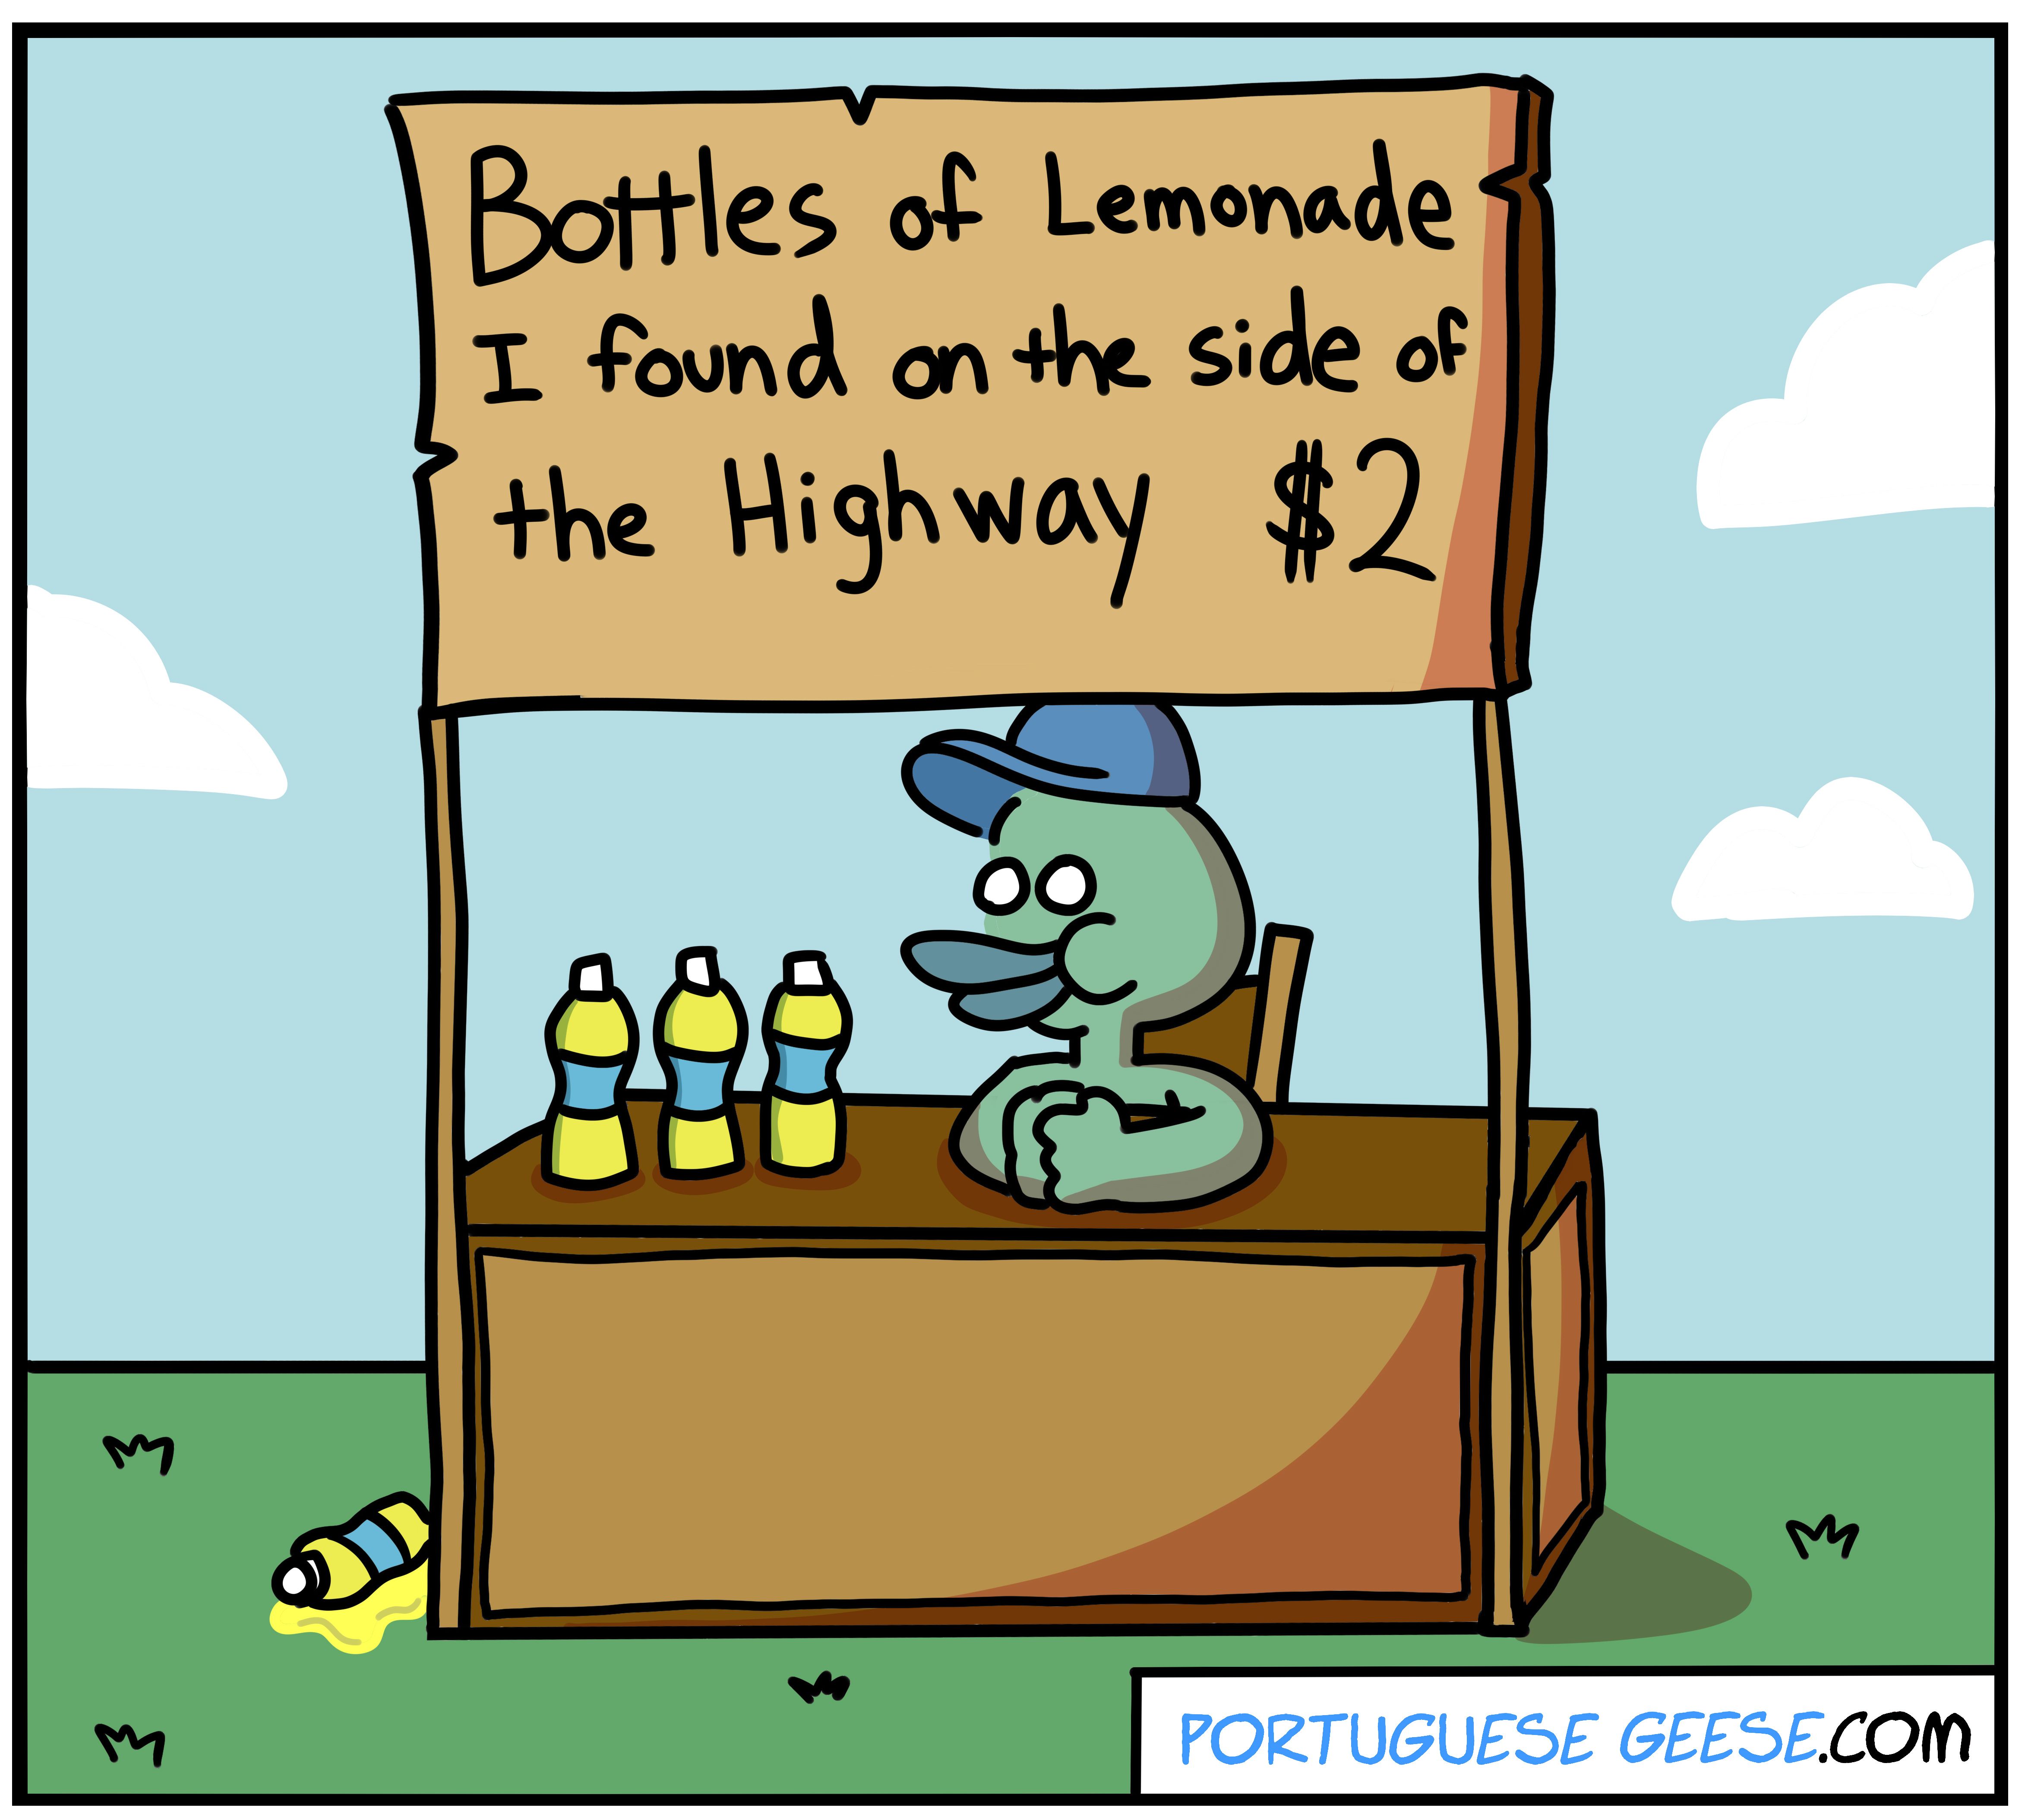 Lemonade for sale